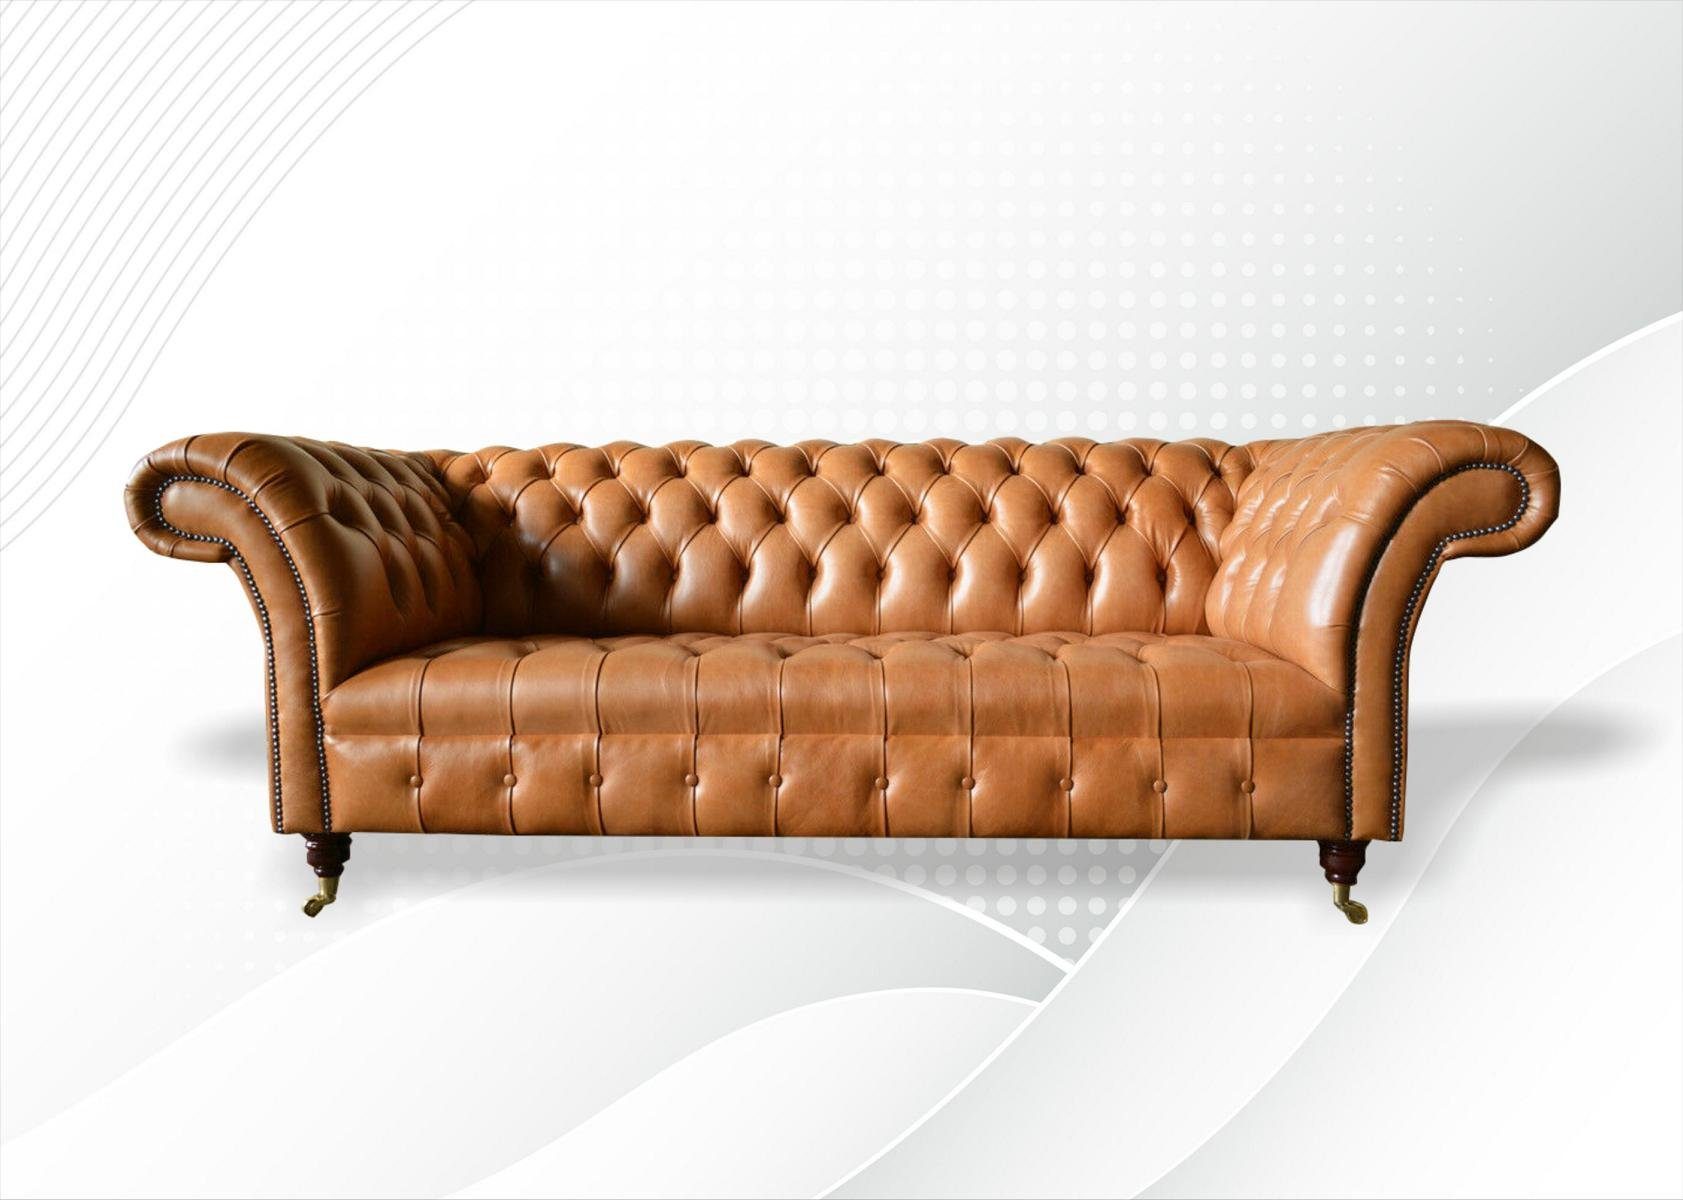 JVmoebel Sofa Chesterfield Design Luxus Polster Sofa Sitz Garnitur Leder 225cm, Made in Europe